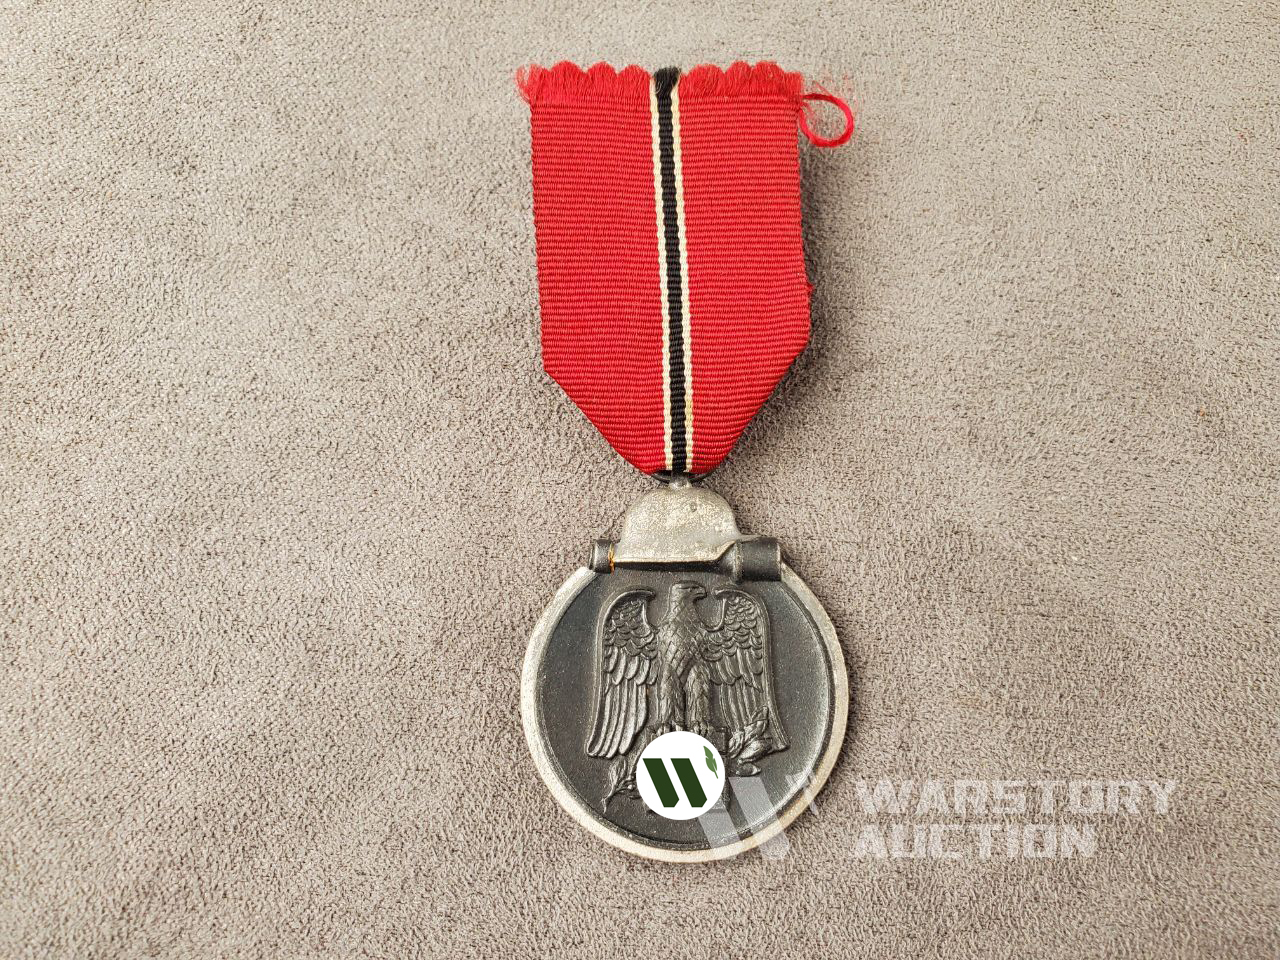 Медаль «Зимнюю кампанию на Востоке 1941/42 (Восточная медаль)»